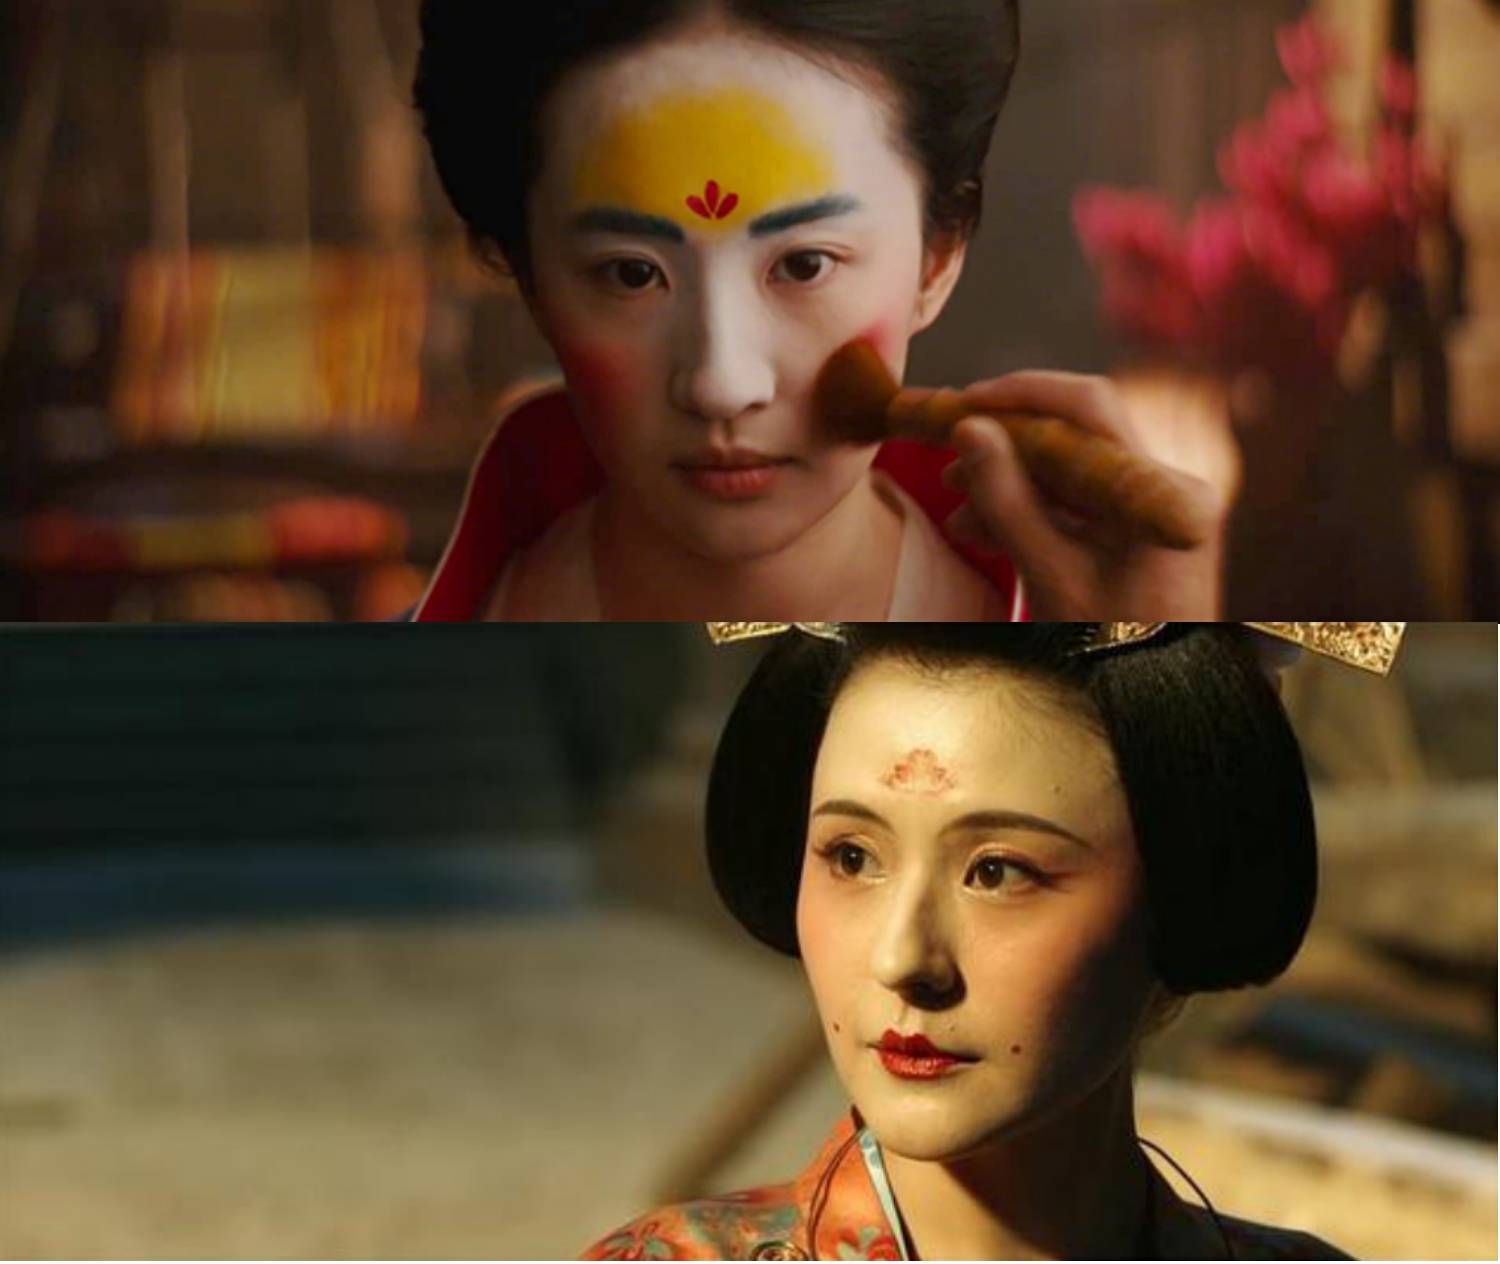 有意思的是,这种流行于魏晋南北朝的"花黄"妆,在不同朝代的妆容上却